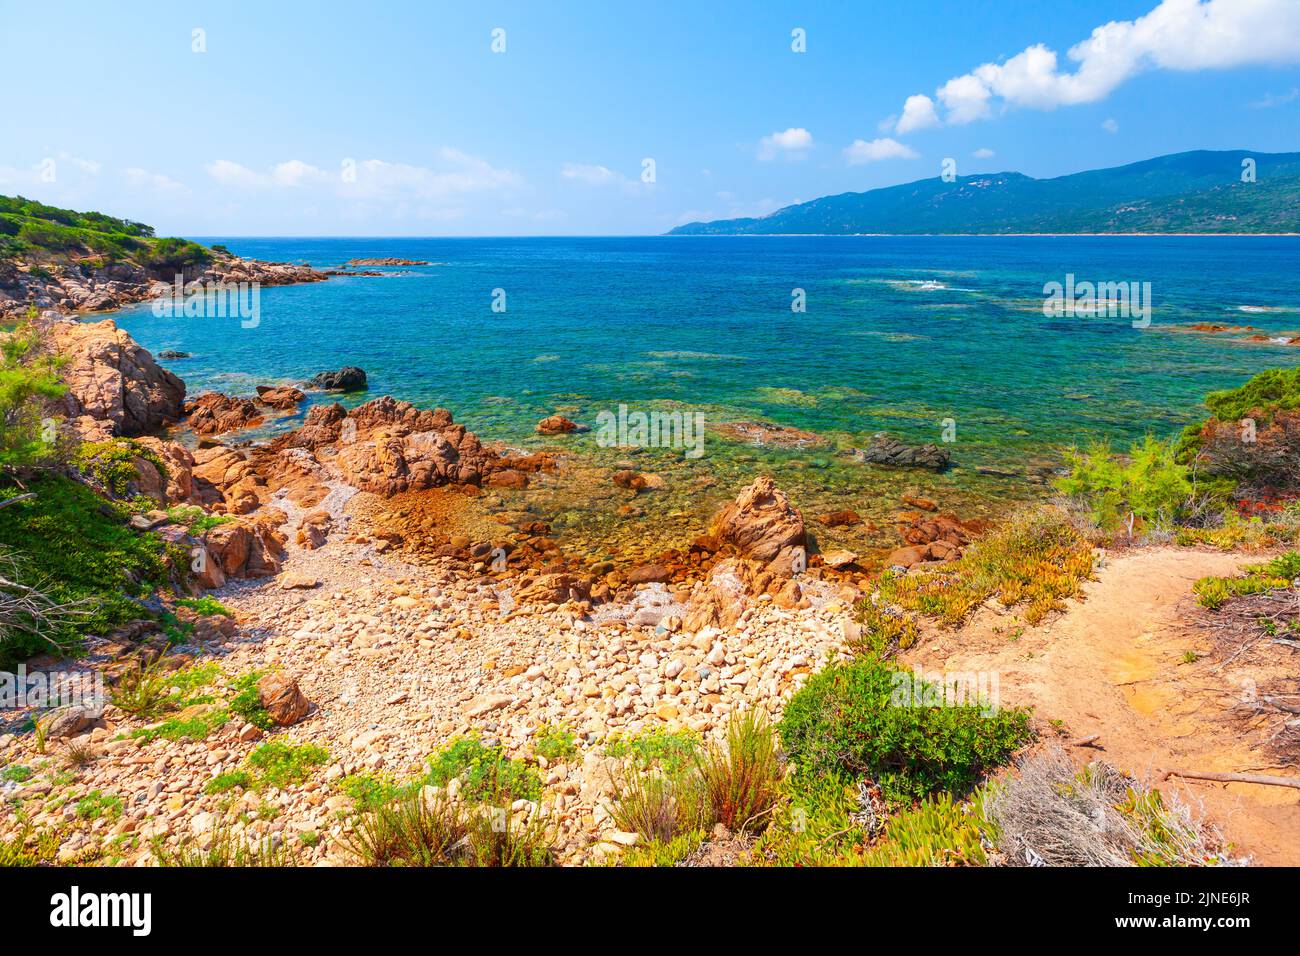 Playa de Cupabia, isla de Córcega, Francia. Foto del paisaje costero tomada en un día soleado Foto de stock